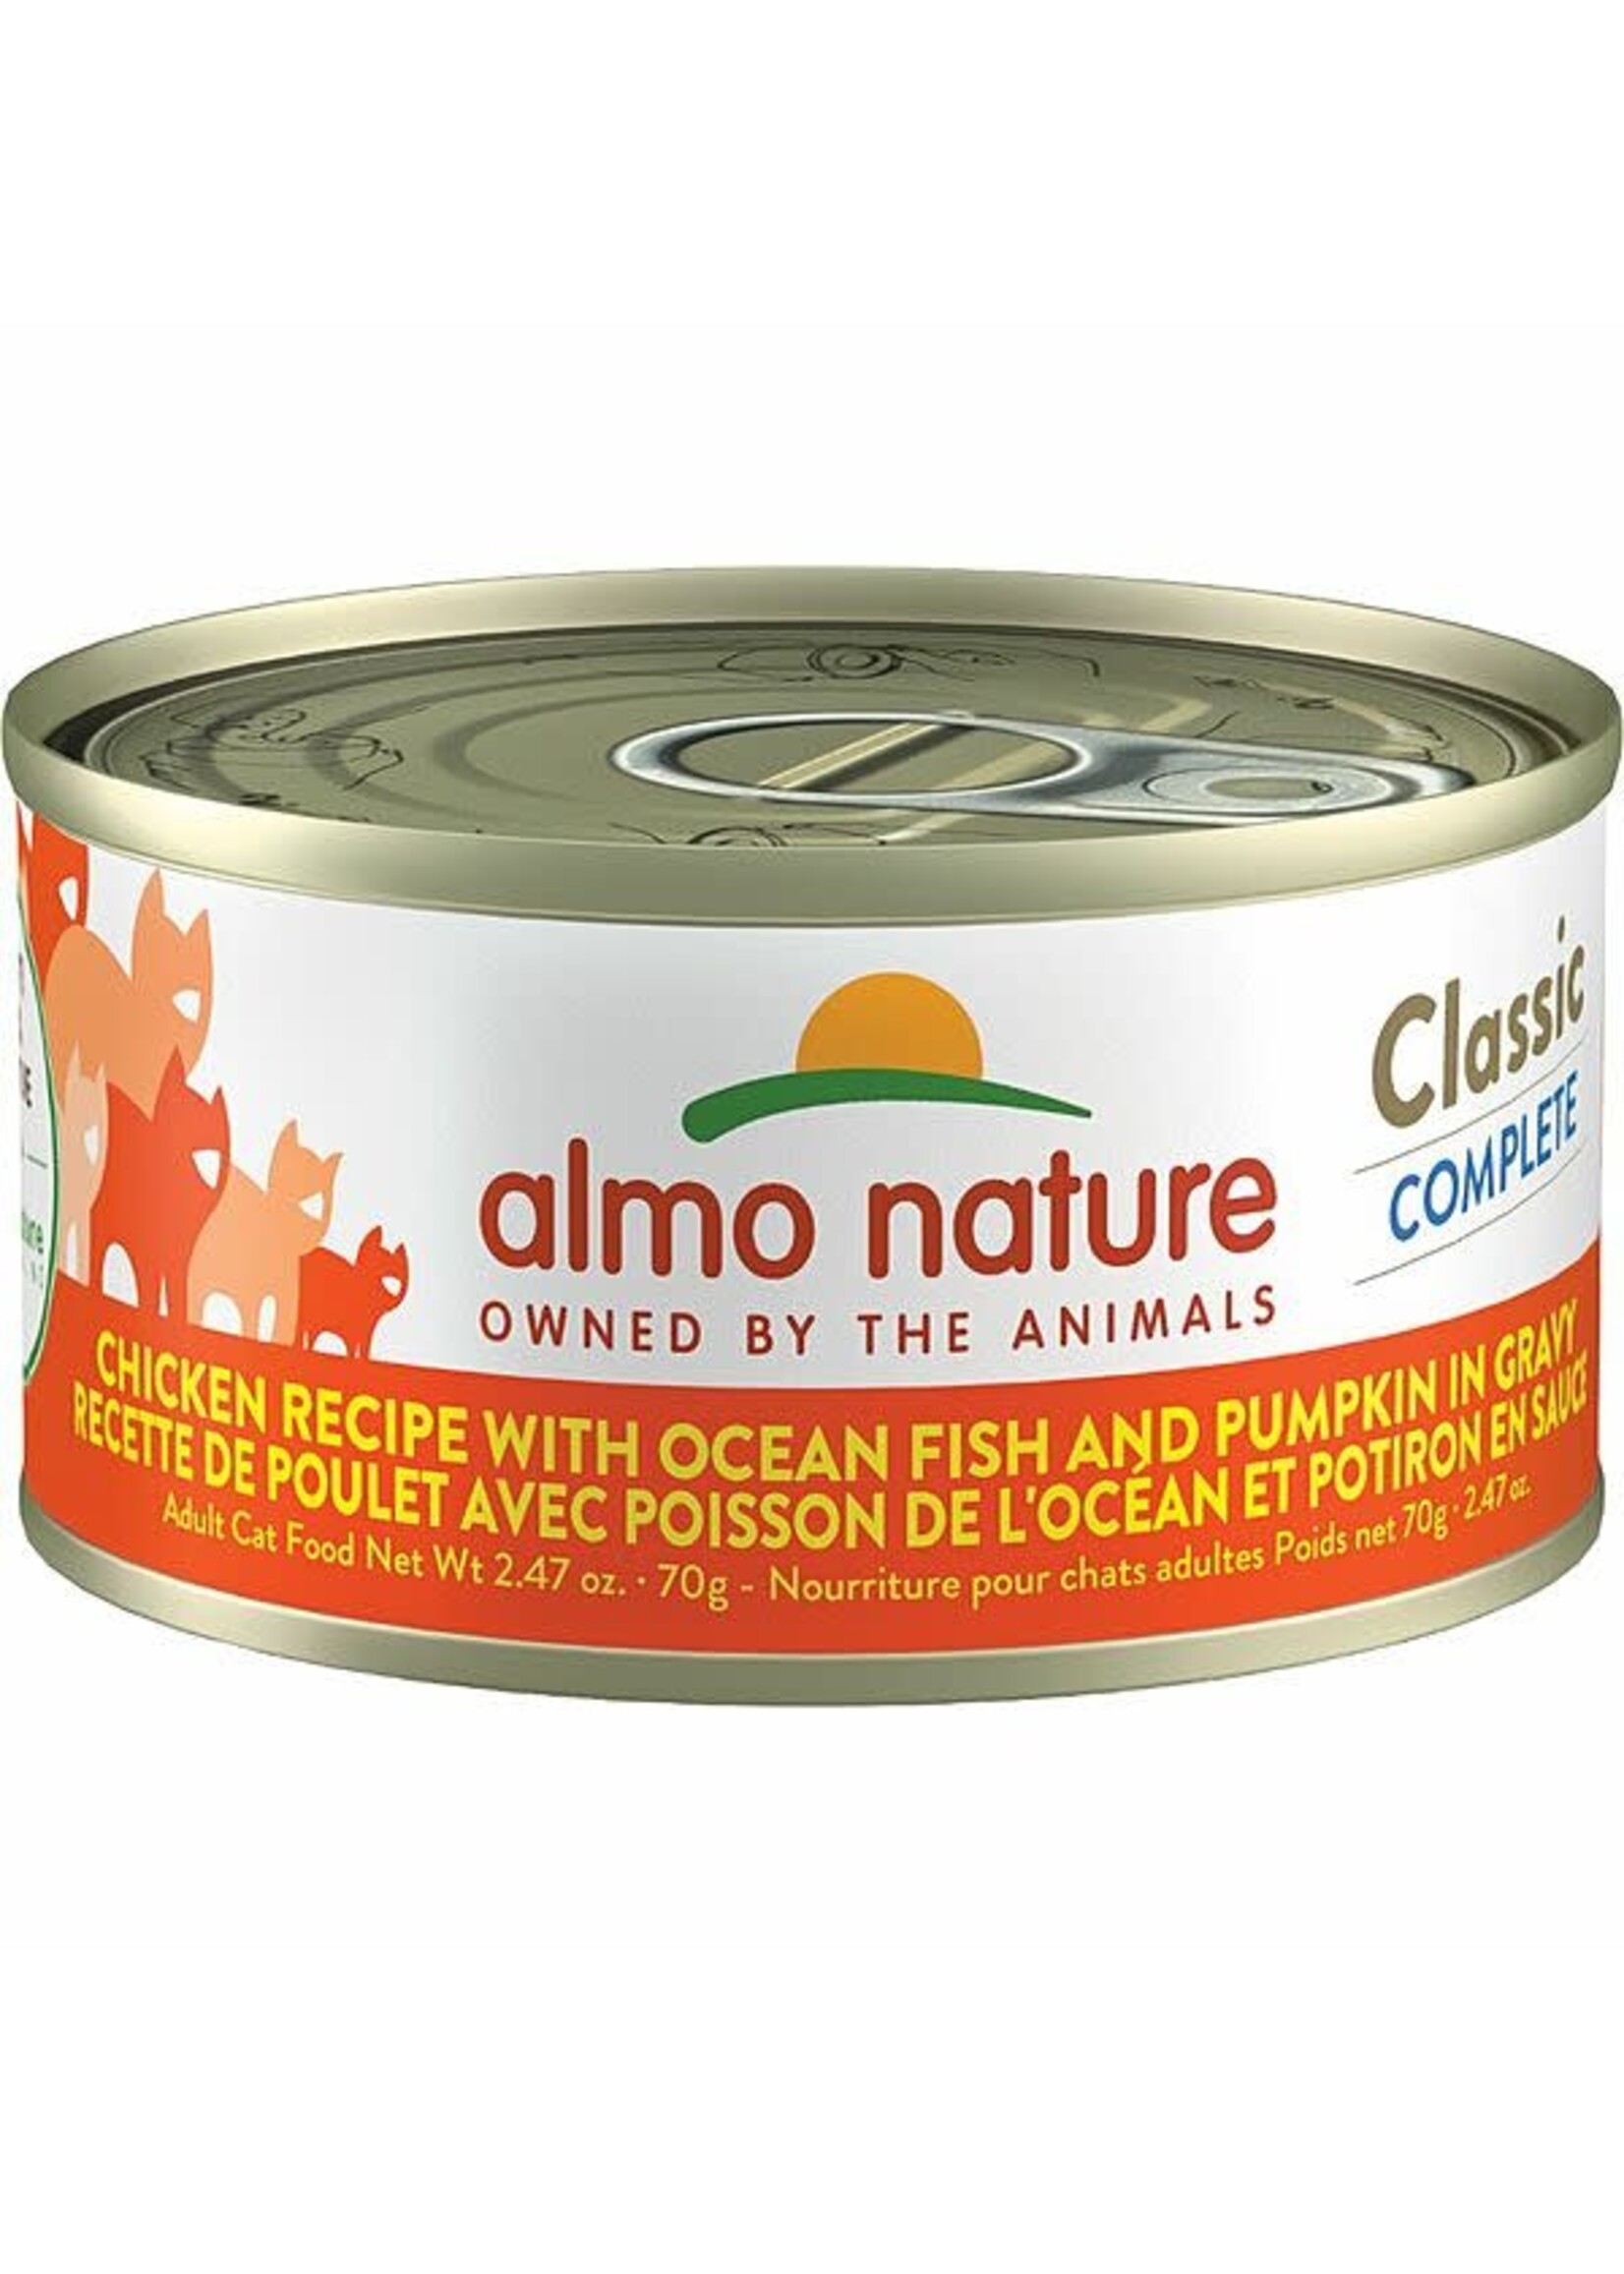 almo Nature almo nature Classic Complete Chicken Recipe w/ Ocean Fish & Pumpkin in Gravy 70gm case12